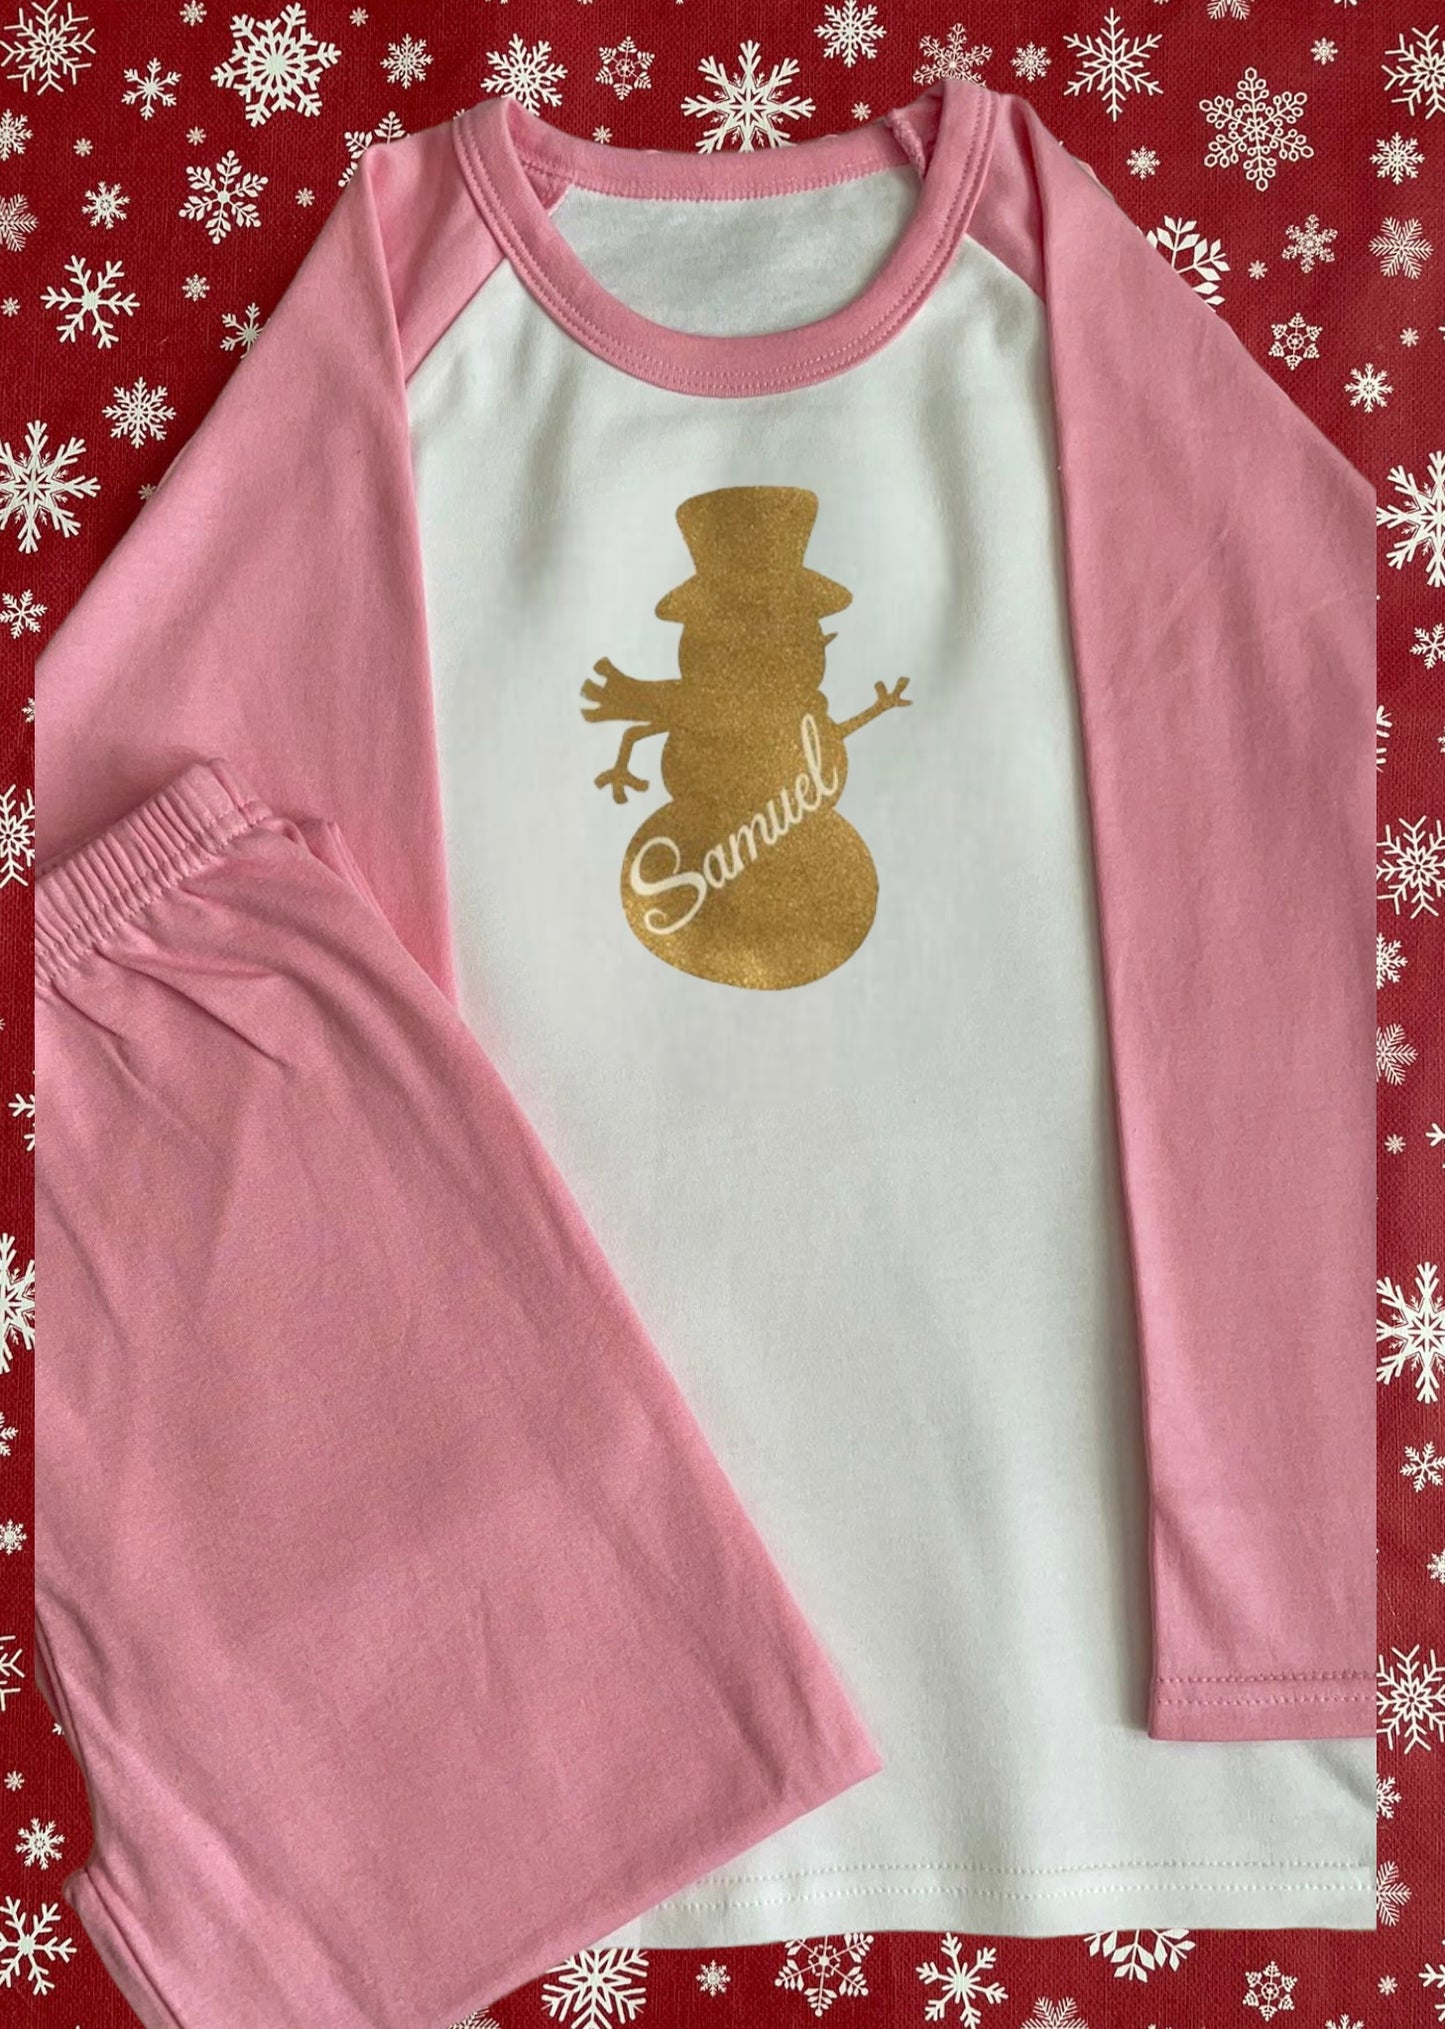 Personalised Christmas Pyjamas - 100% cotton xmas gift. Christmas eve - Snowman